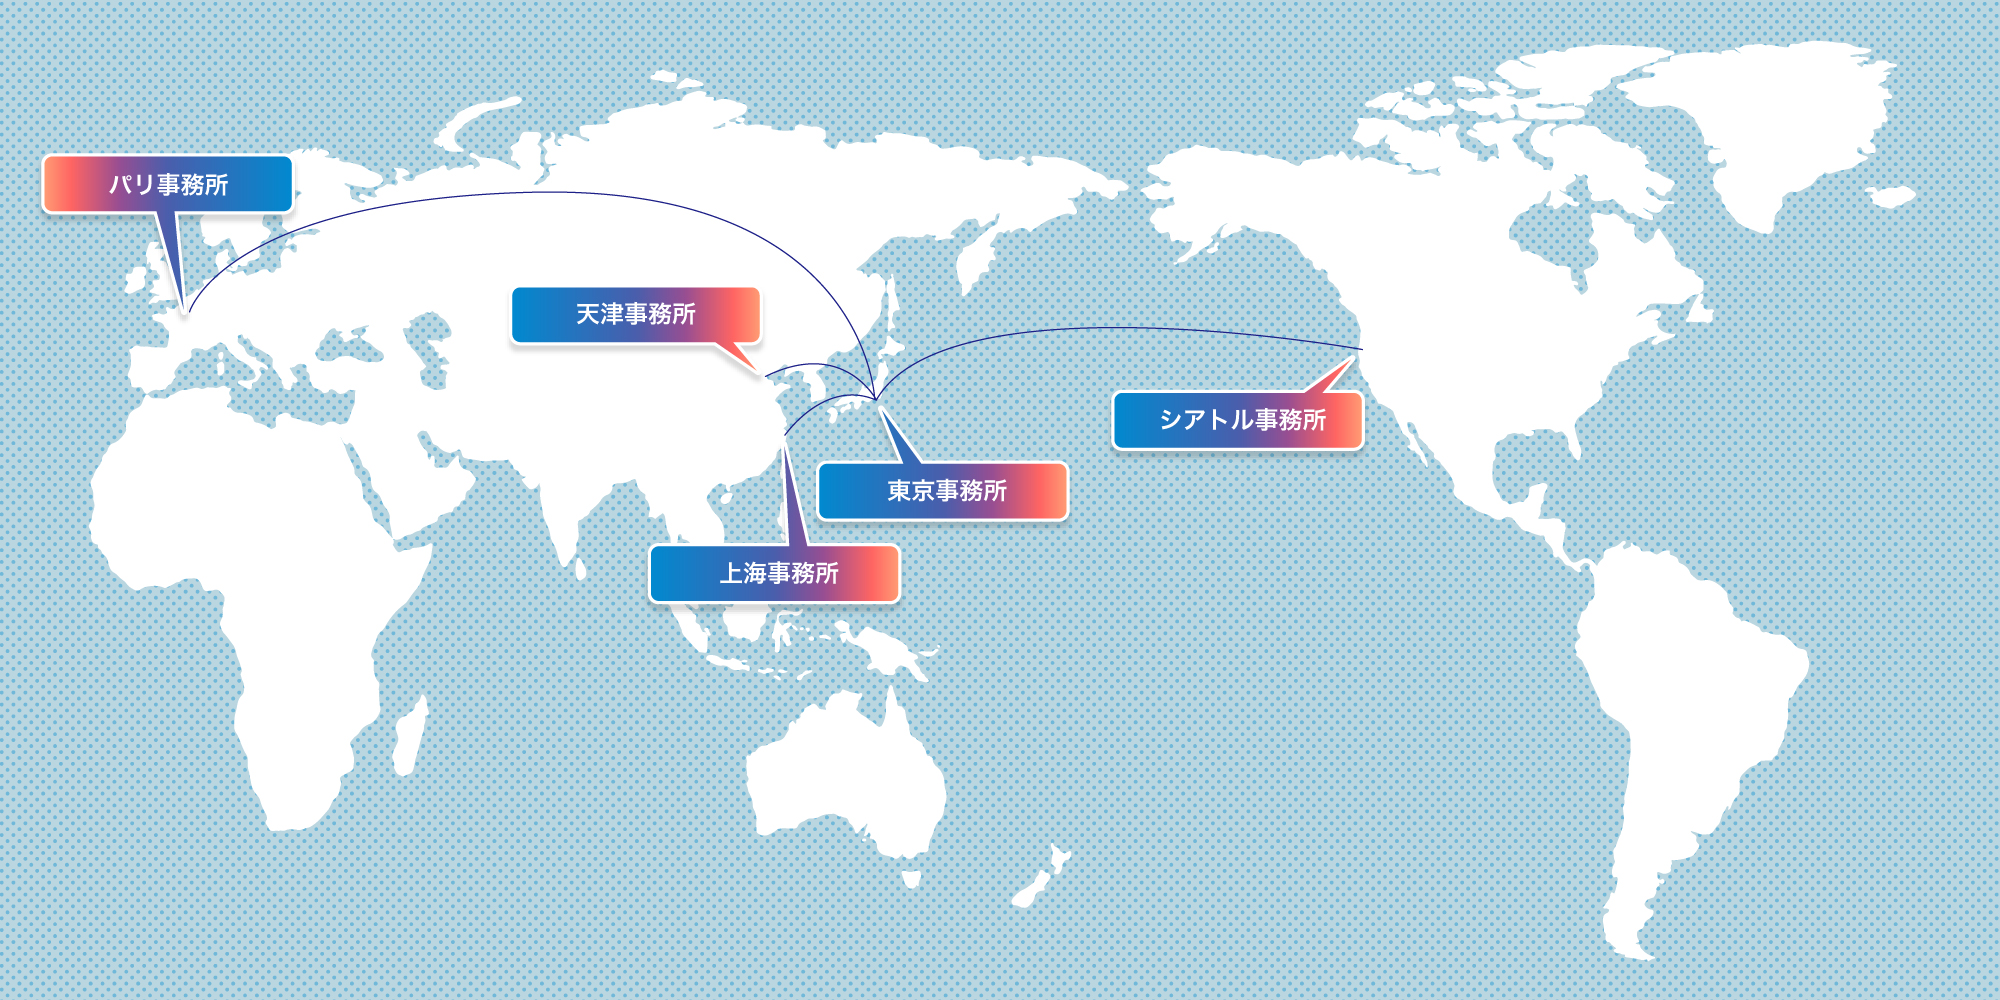 海外ネットワーク拠点 マップ